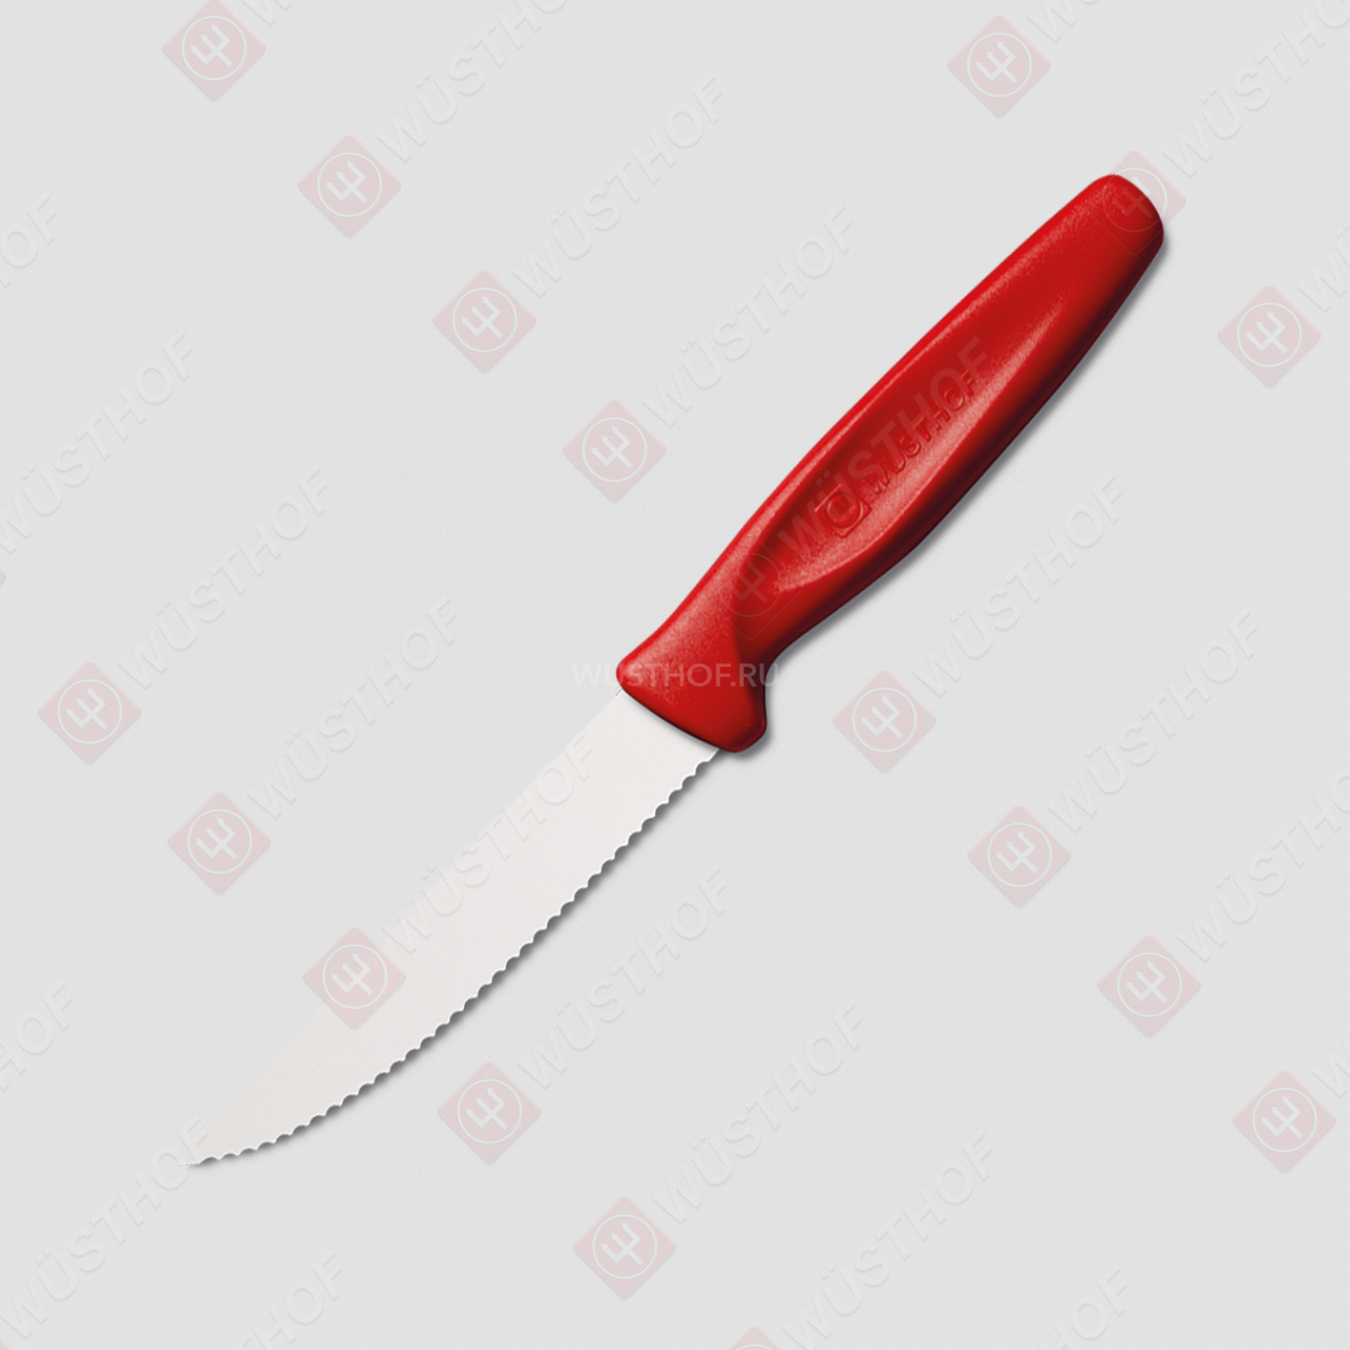 Нож кухонный для стейка 10 см, рукоять красная, серия Sharp Fresh Colourful, WUESTHOF, Золинген, Германия